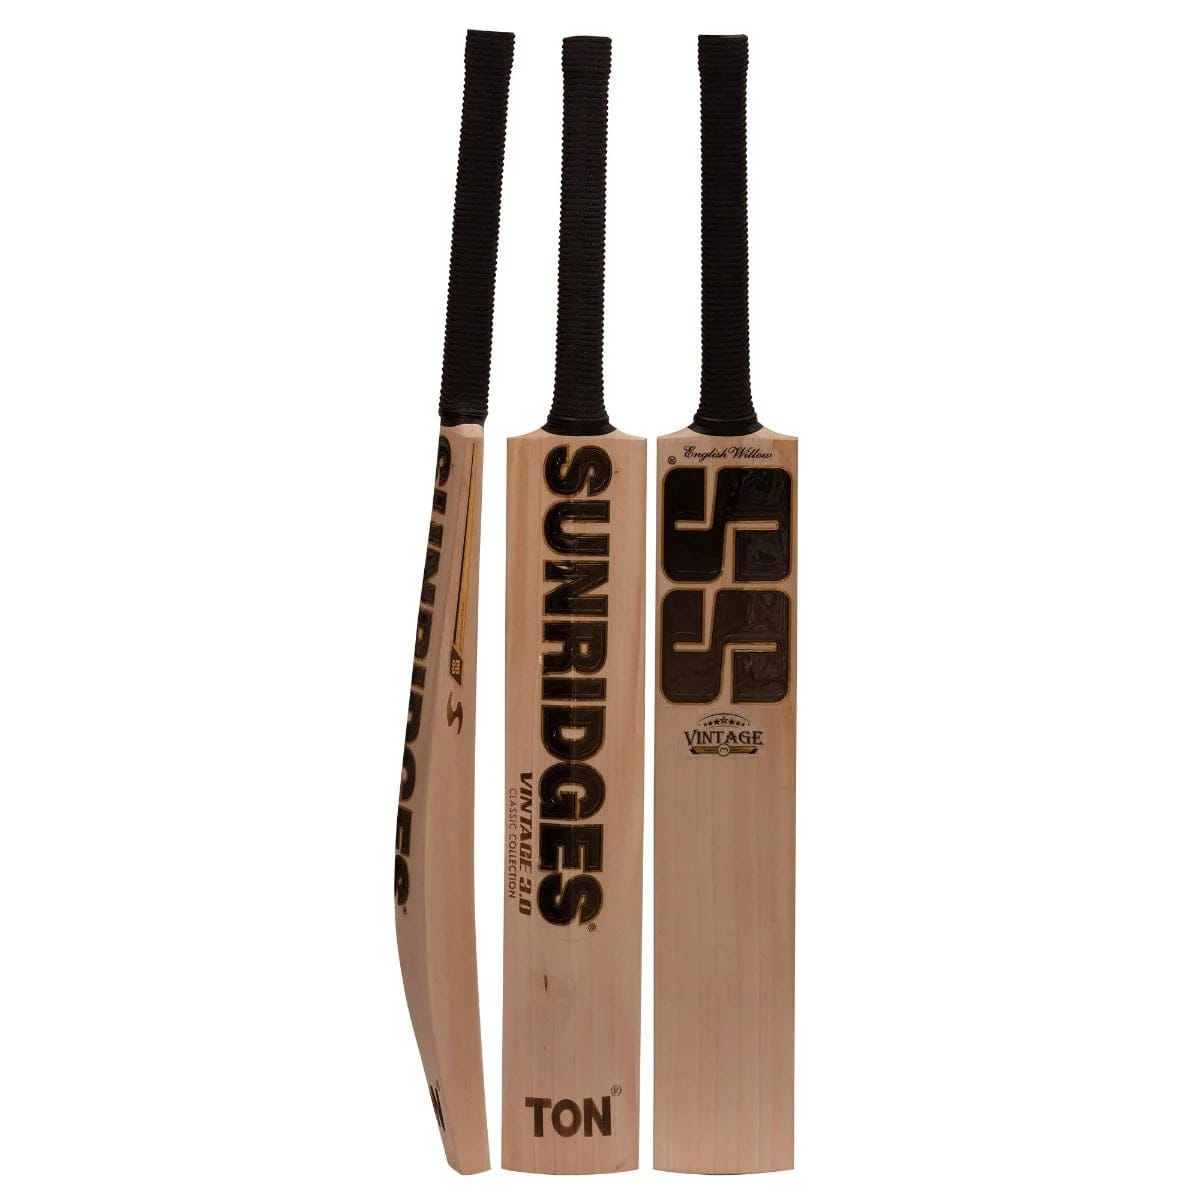 SS Cricket Bats Short Hand / Medium 2lbs 8oz - 2lbs 10oz SS Vintage 3.0 Adult Cricket Bat